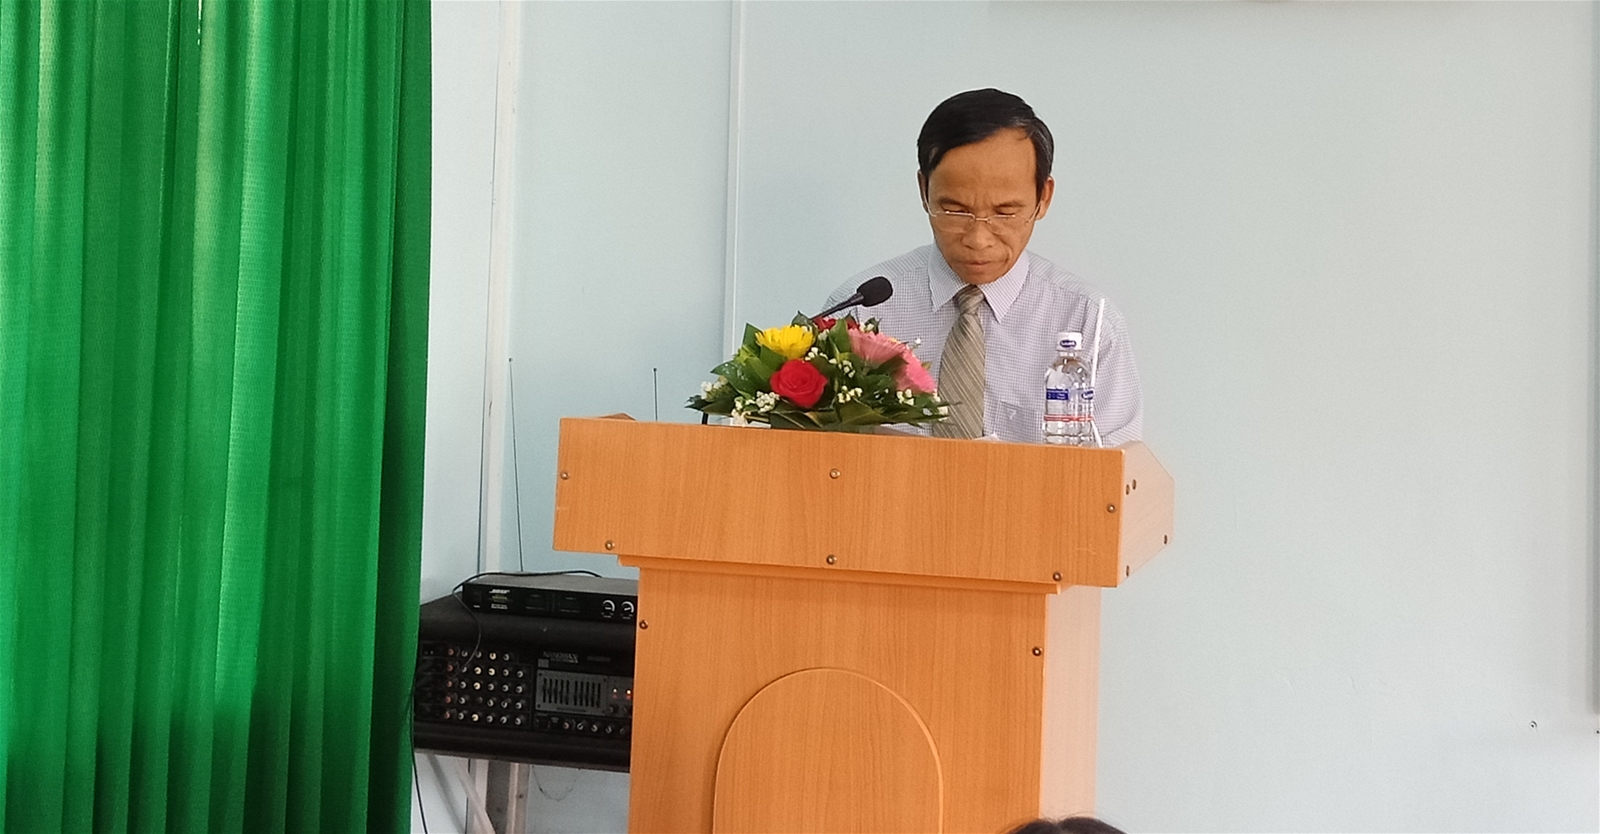 Khai giảng lớp Trung cấp lý luận chính trị hành chính hệ không tập trung khóa học 2018-2019 tại huyện Krông Ana